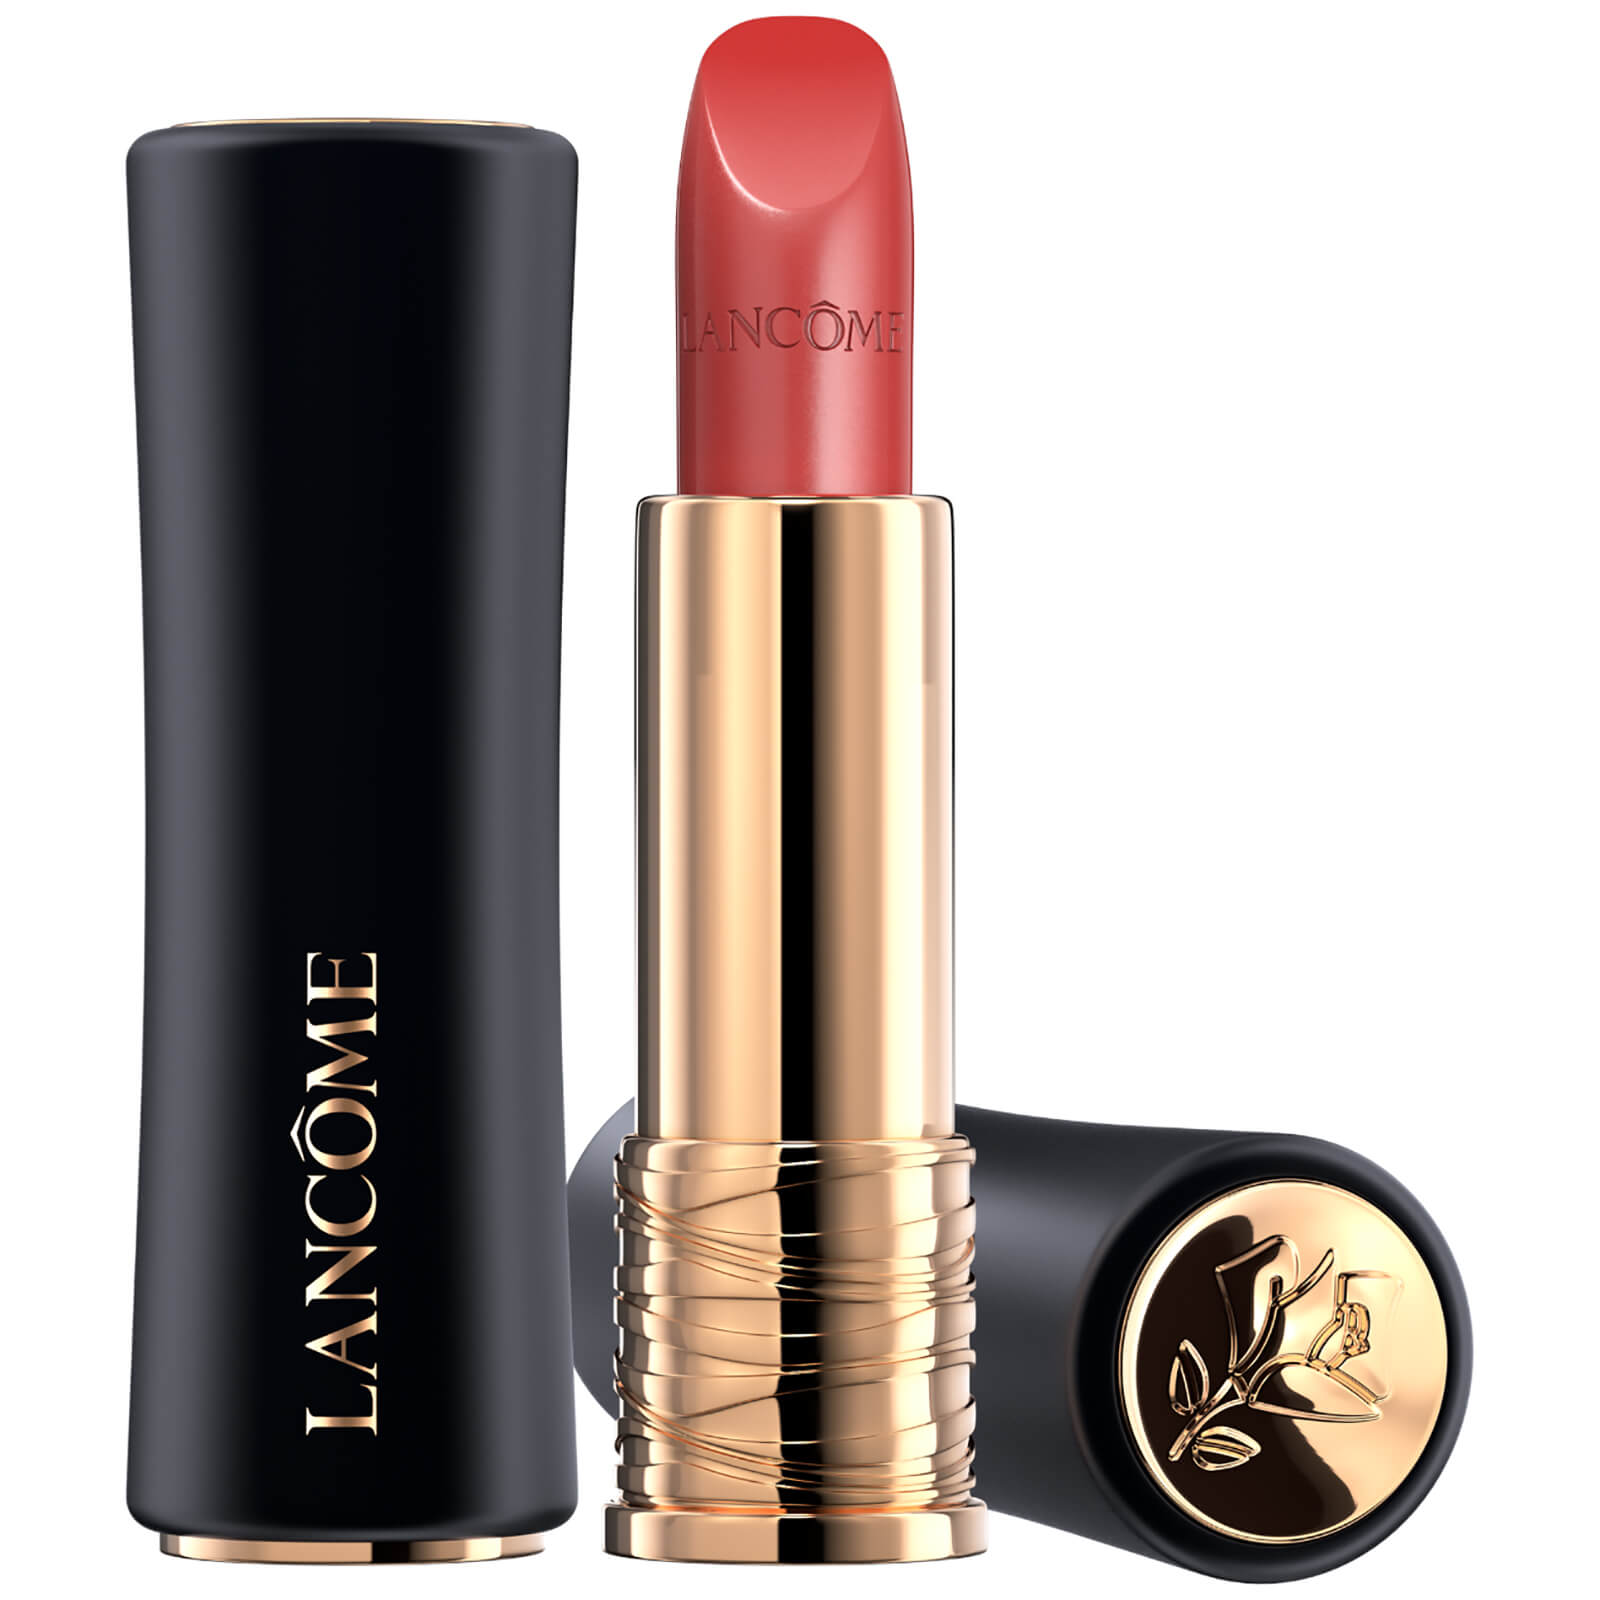 Lancôme L'Absolu Rouge Cream Lipstick 35ml (Verschiedene Farbtöne) - 07 Bouquet Nocturne